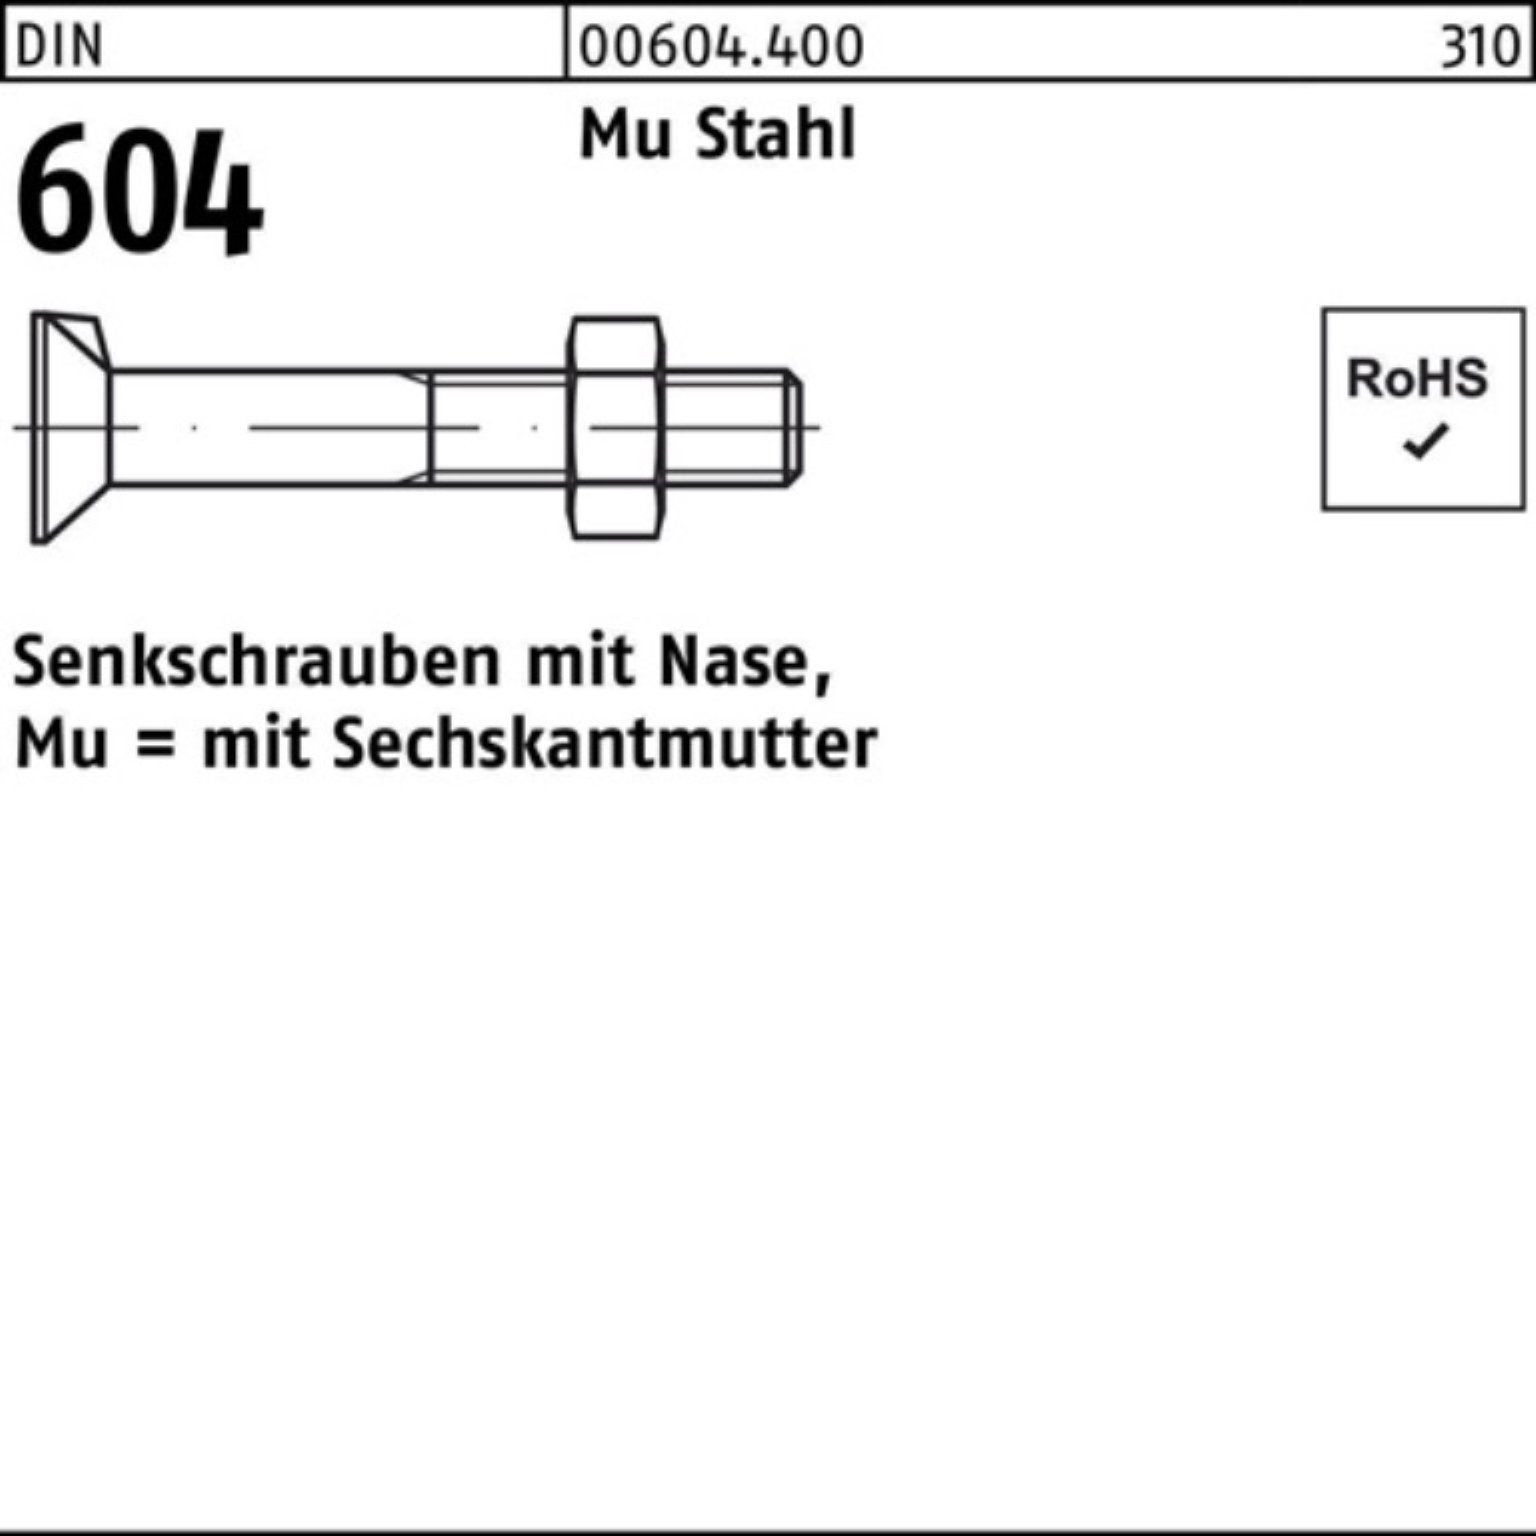 Reyher Senkschraube 100er Pack Senkschraube DIN 604 Nase/6-ktmutter M24x 80 Mu Stahl 4.6 2